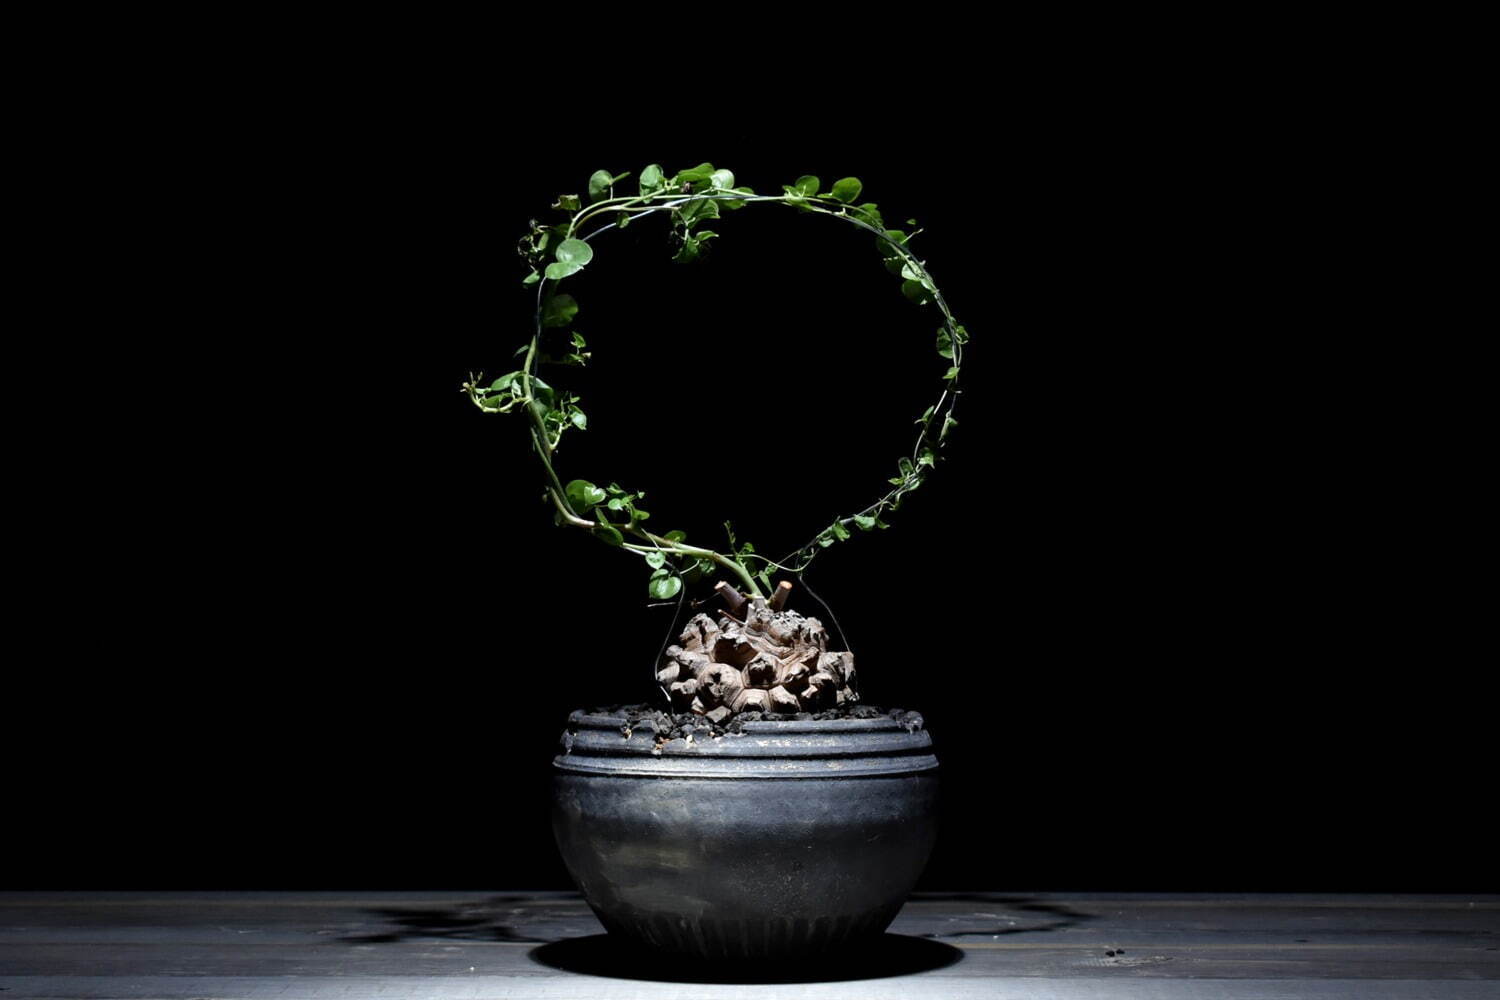 ハチラボ植木鉢×ラフラムコラボセット
ディオスコレア・エレファンティペス 亀甲竜 39,600円